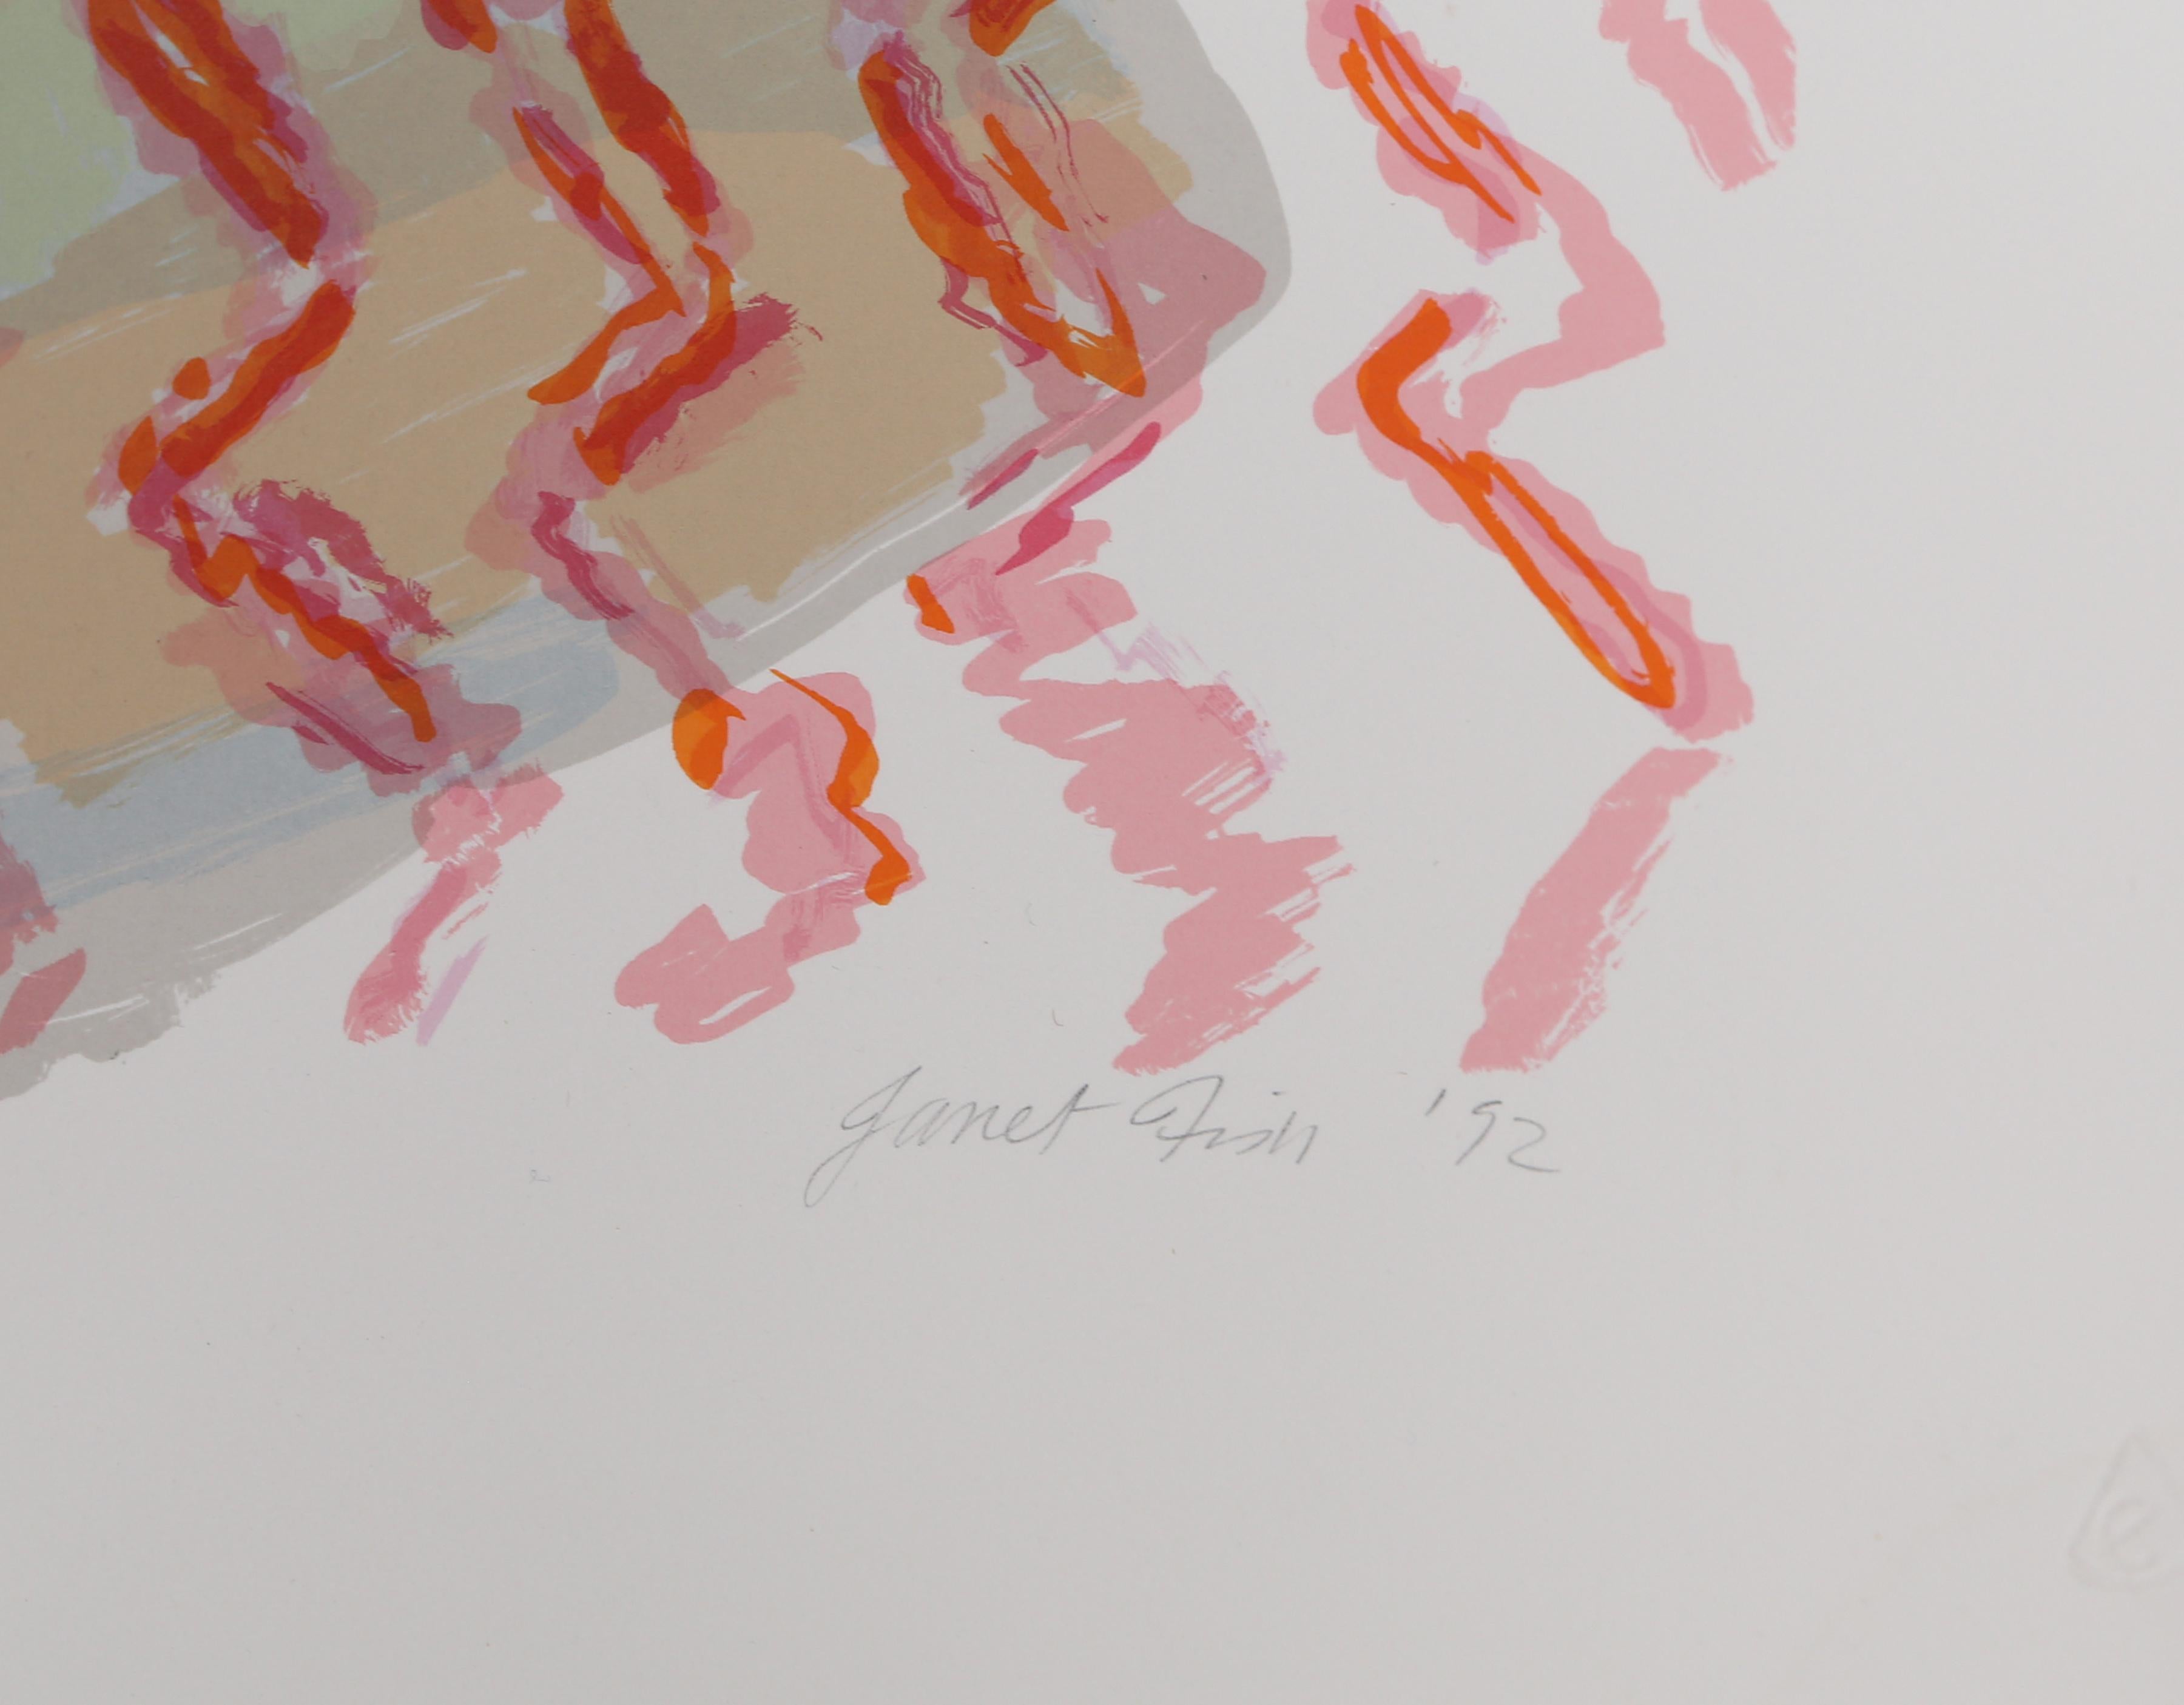 Künstlerin: Janet Fish, Amerikanerin (1938 - )
Titel: Stilleben mit Früchten
Jahr: 1992
Medium: Siebdruck, signiert, nummeriert und datiert mit Bleistift 
Auflage: 75
Bildgröße: 36 x 42 Zoll
Größe: 40,5 x 46,5 Zoll (102,87 x 118,11 cm)